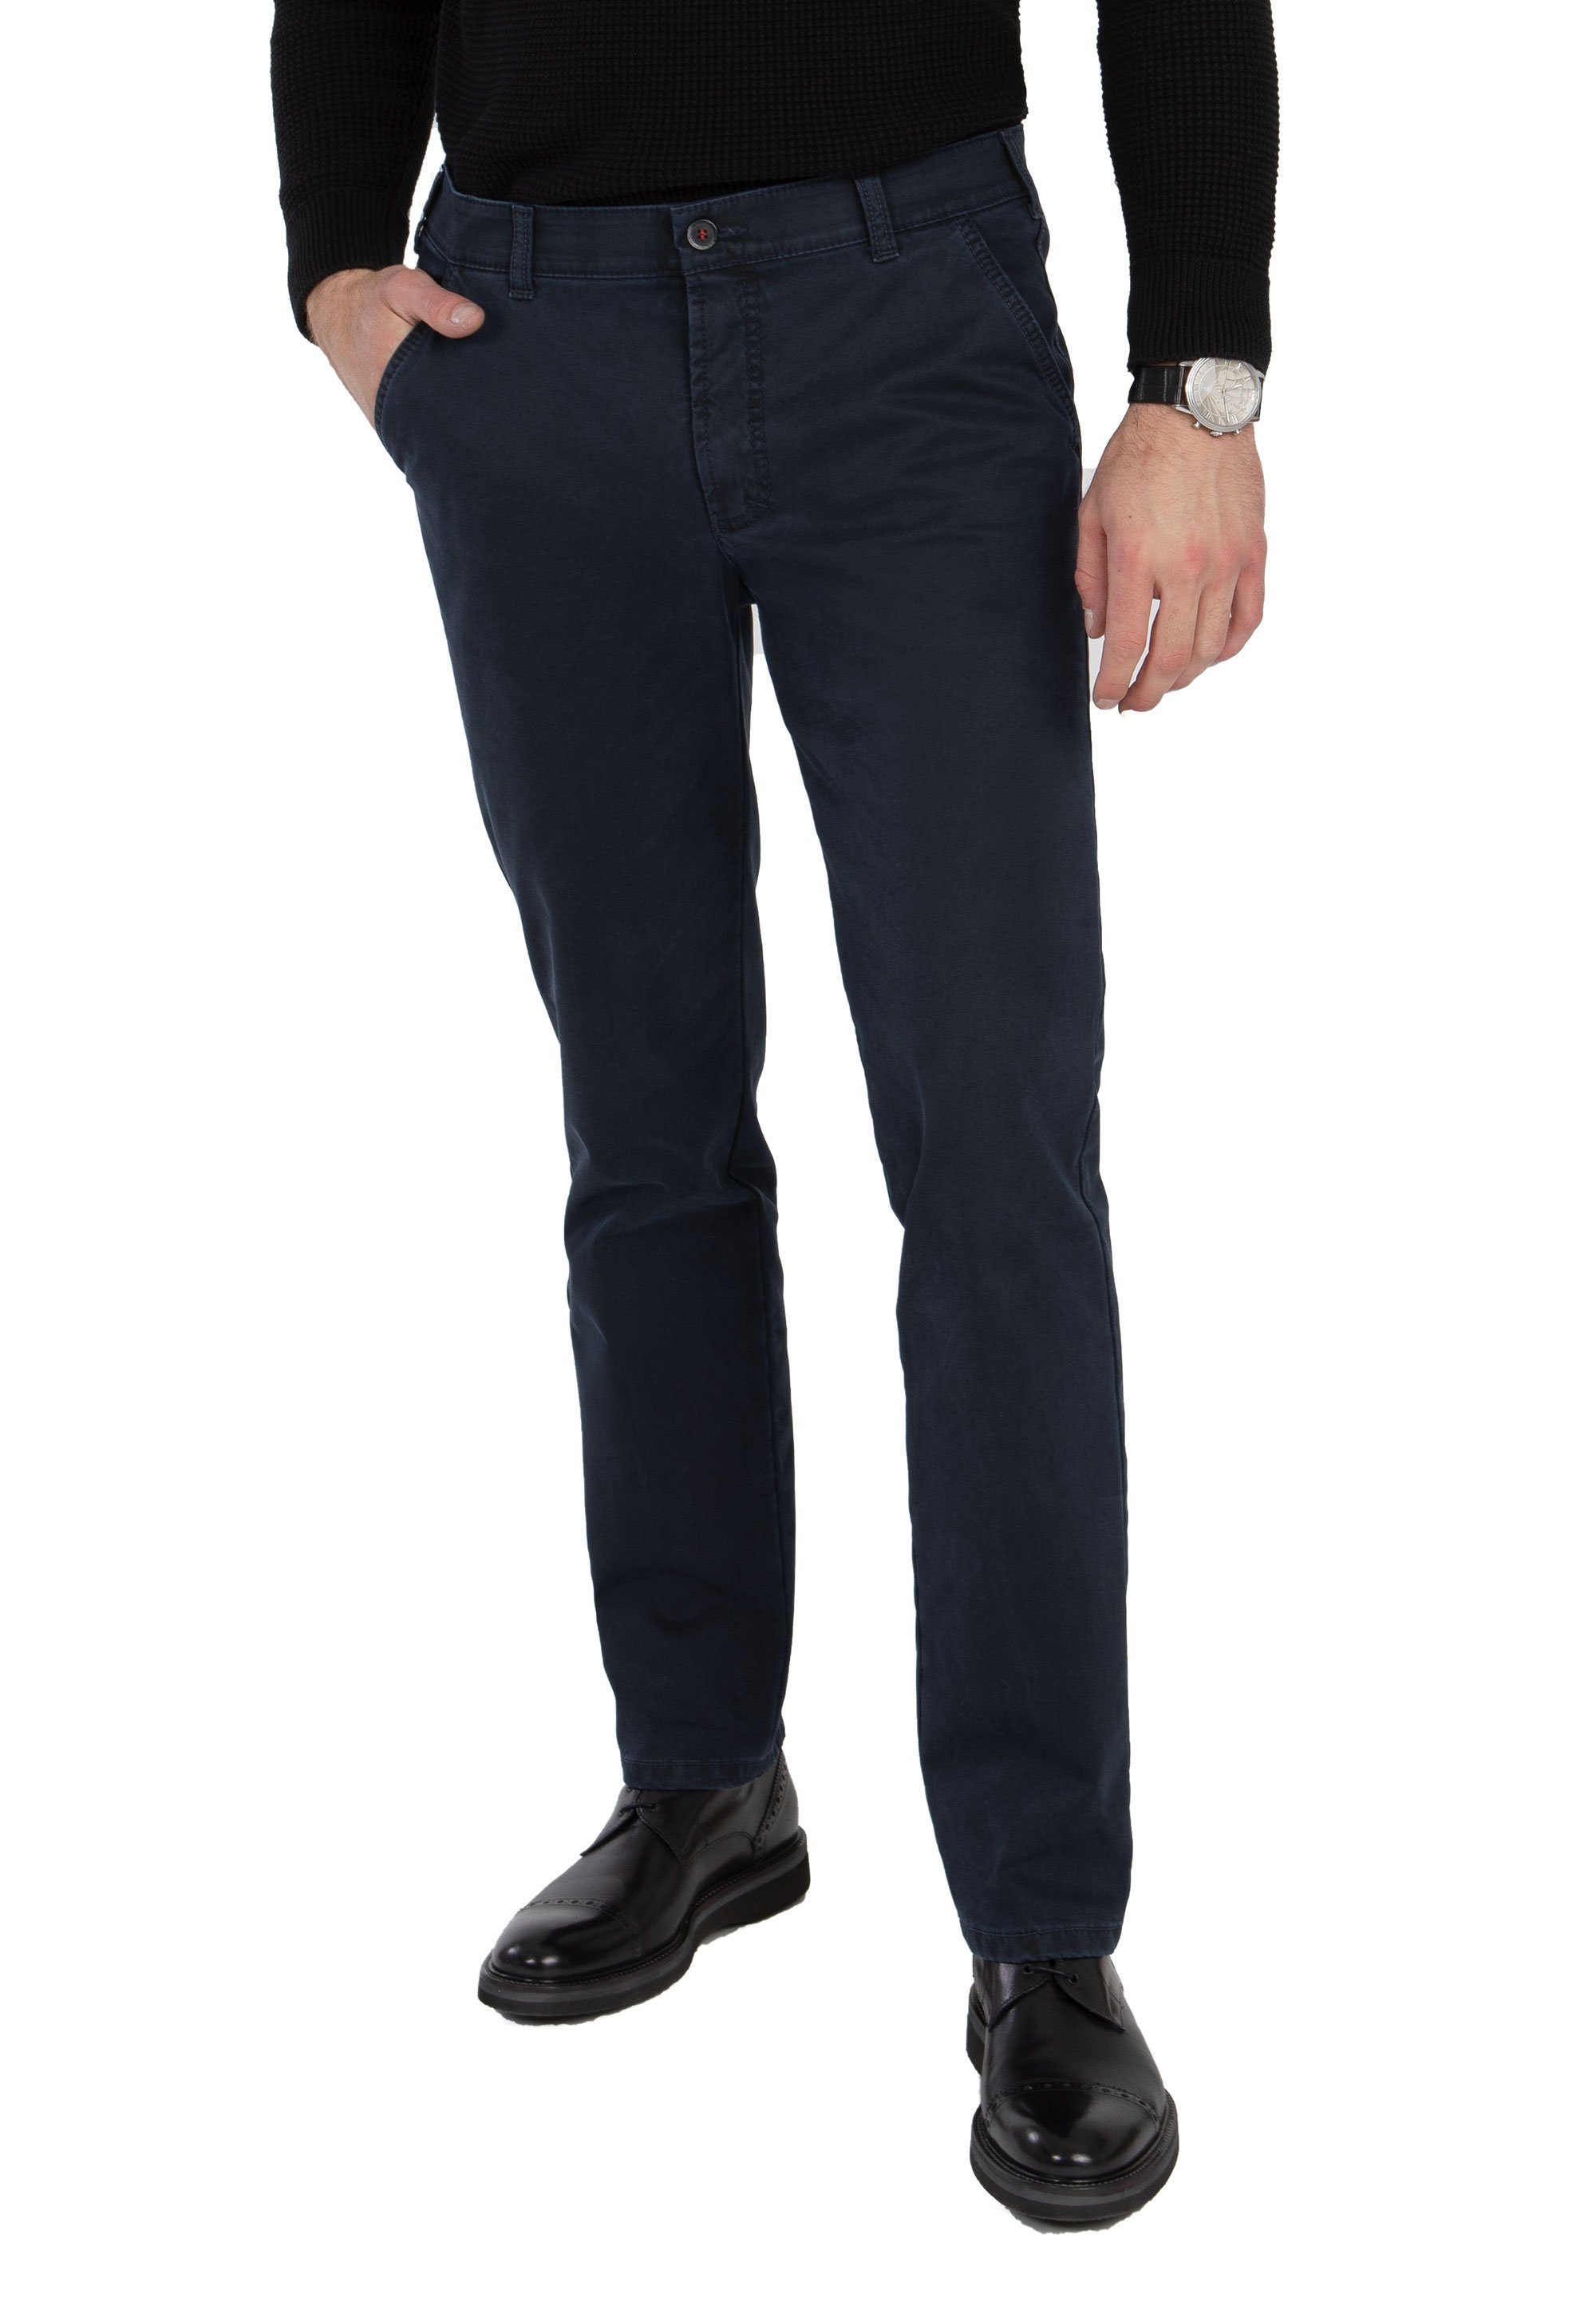 [Super günstiger Sonderpreis! ] Hinrichs Club of praktischem Comfort blau 6429 Slim-fit-Jeans GARVEY Thermolite mit